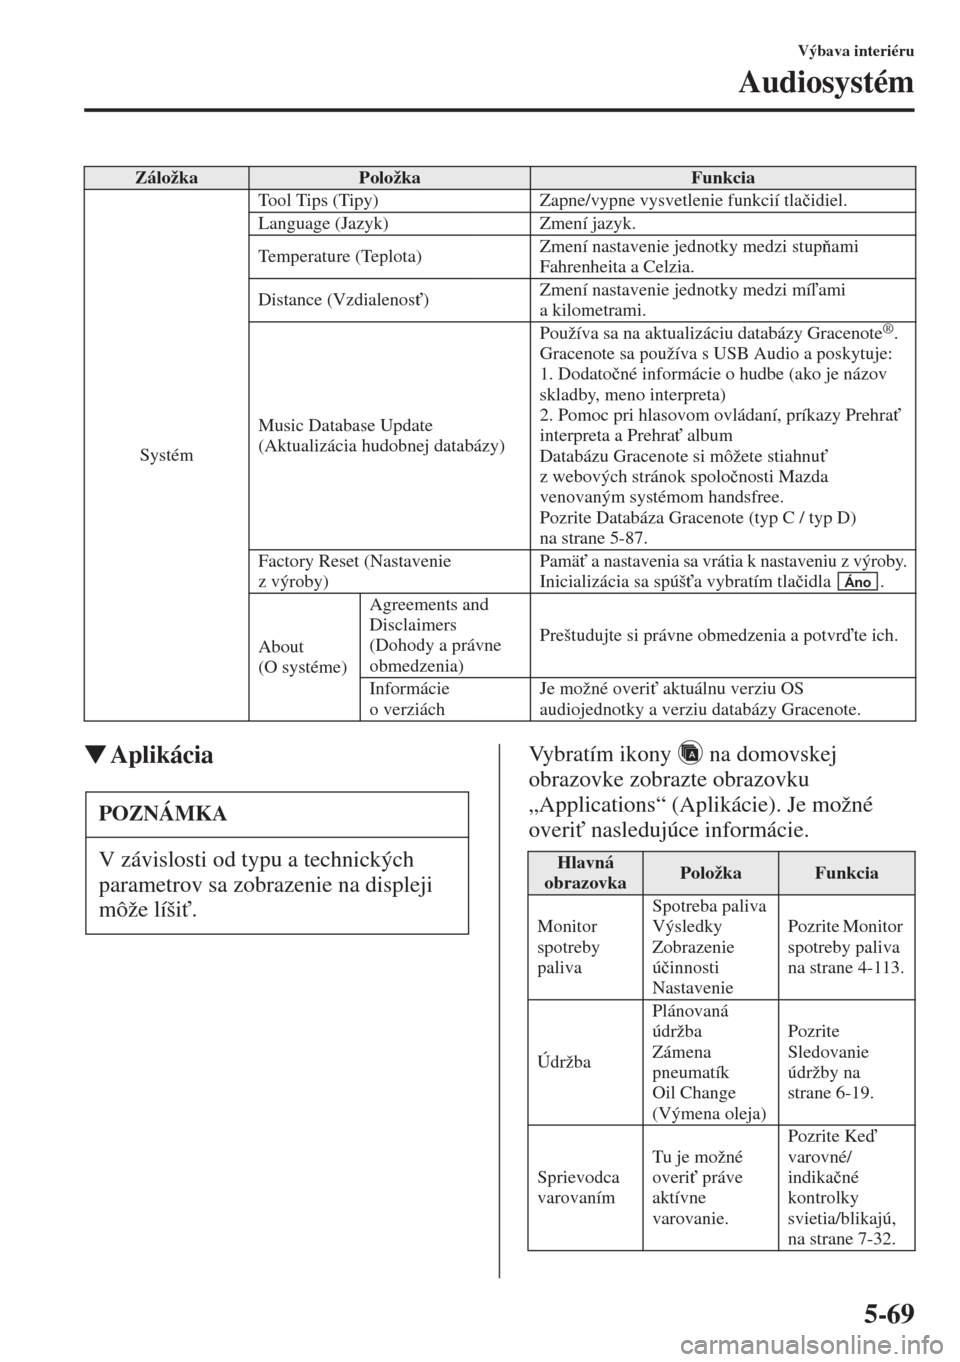 MAZDA MODEL CX-5 2015  Užívateľská príručka (in Slovak) 5-69
Výbava interiéru
Audiosystém
�WAplikáciaVybratím ikony   na domovskej 
obrazovke zobrazte obrazovku 
„Applications“ (Aplikácie). Je možné 
overi" nasledujúce informácie.
ZáložkaP